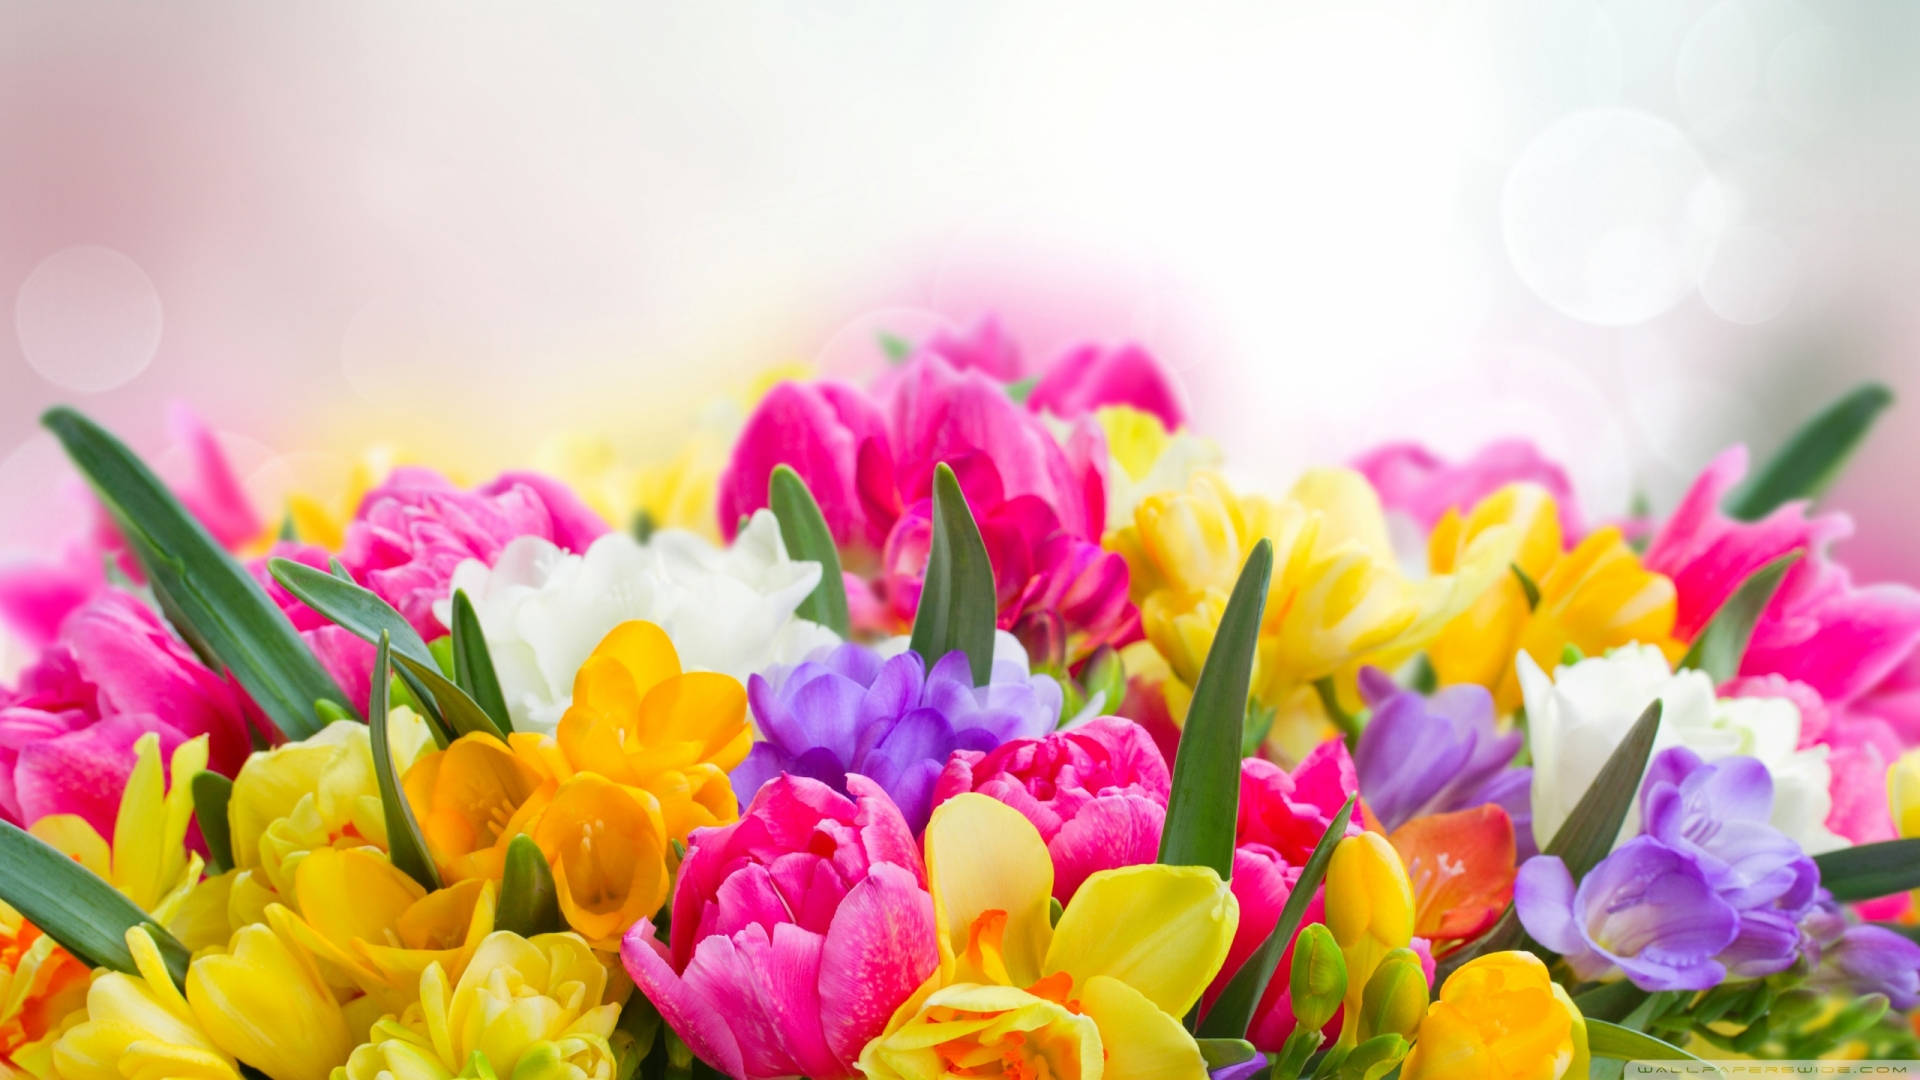 Floresprimaverales Coloridas Con Enfoque De Fotografía. Fondo de pantalla